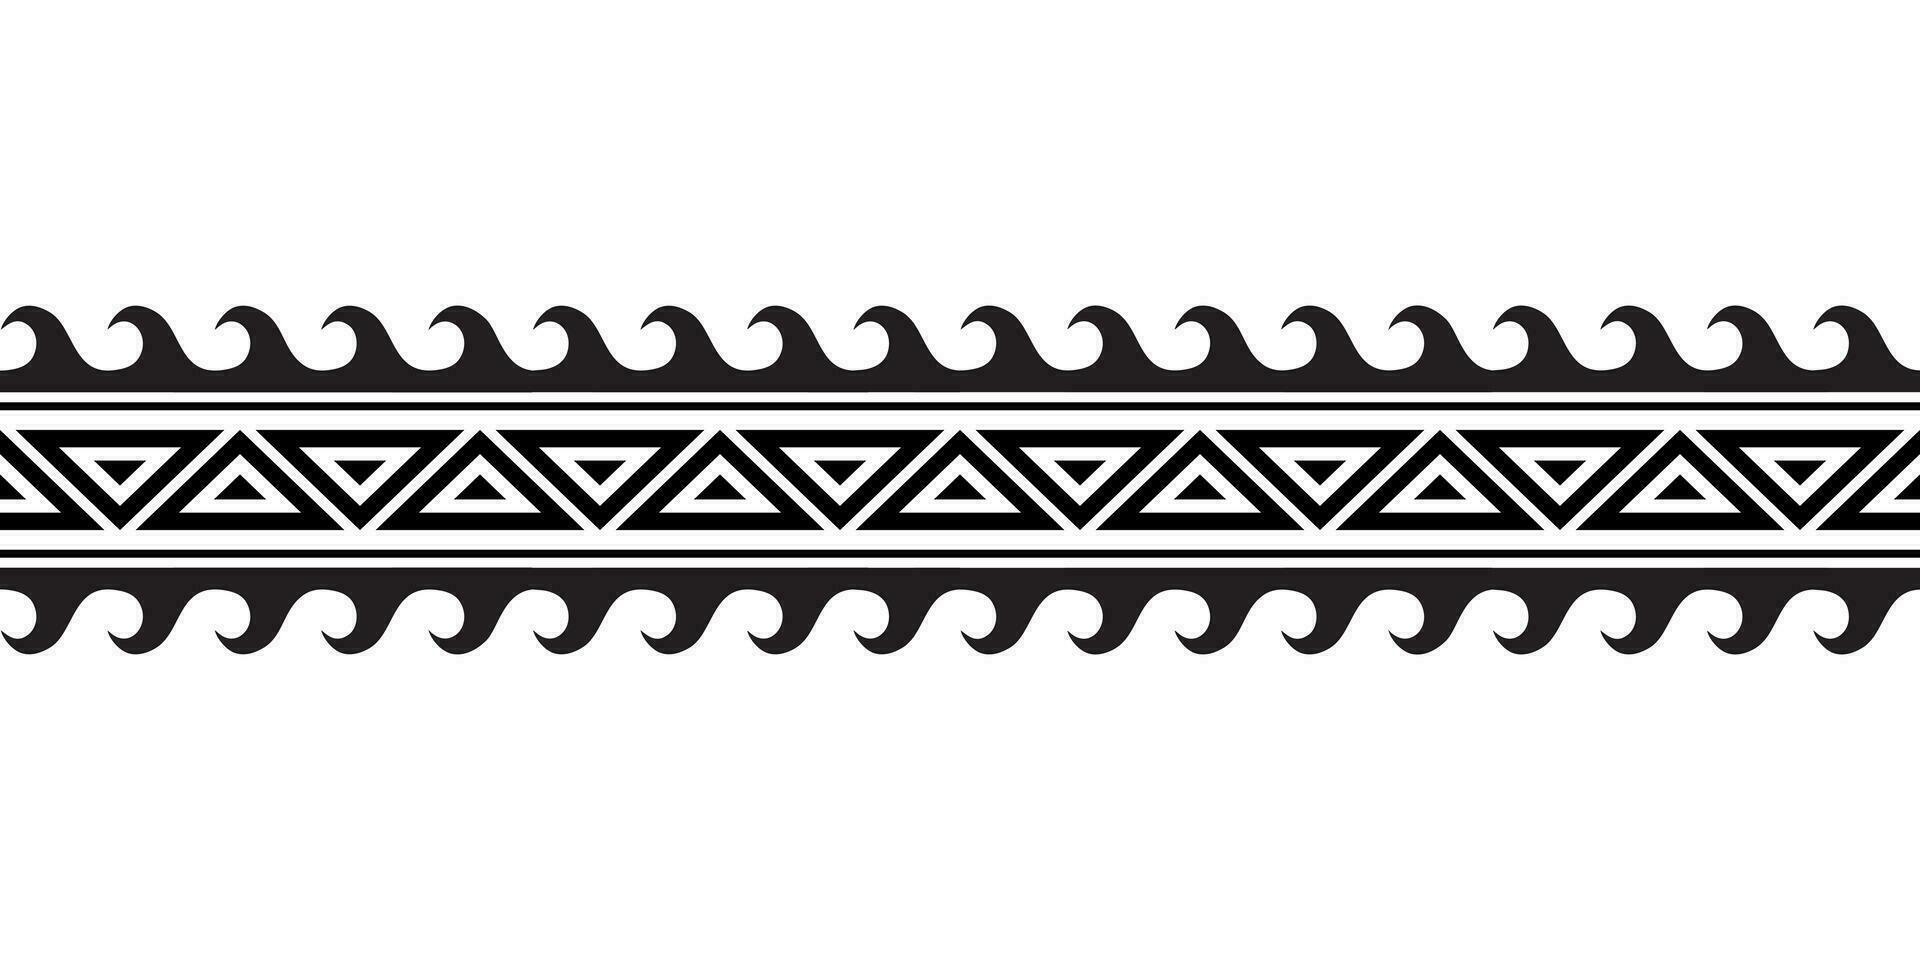 Maori polynesisch tätowieren Armband. Stammes- Ärmel nahtlos Muster Vektor. Samoaner Rand tätowieren Design Vordergrund Arm oder Fuß. Armbinde tätowieren Stamm. Band Stoff nahtlos Ornament isoliert auf Weiß Hintergrund vektor